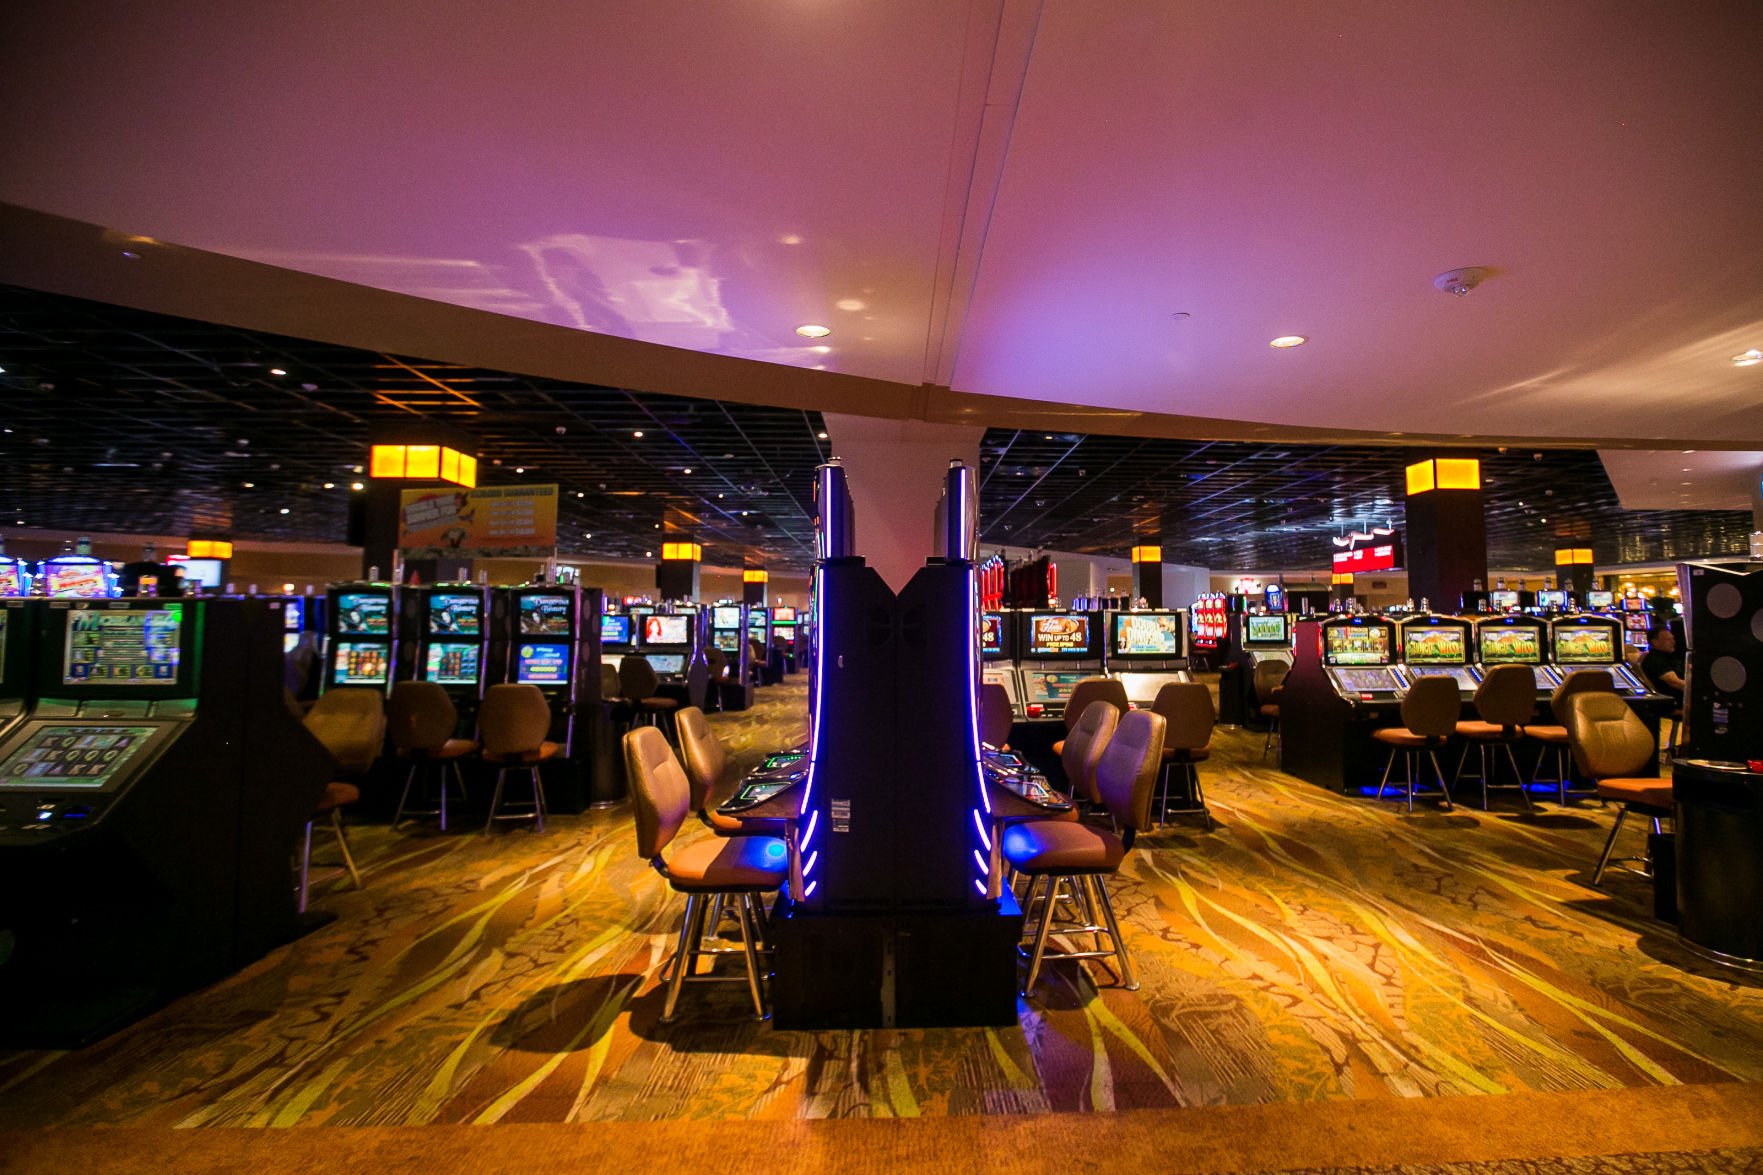 yakima legends casino